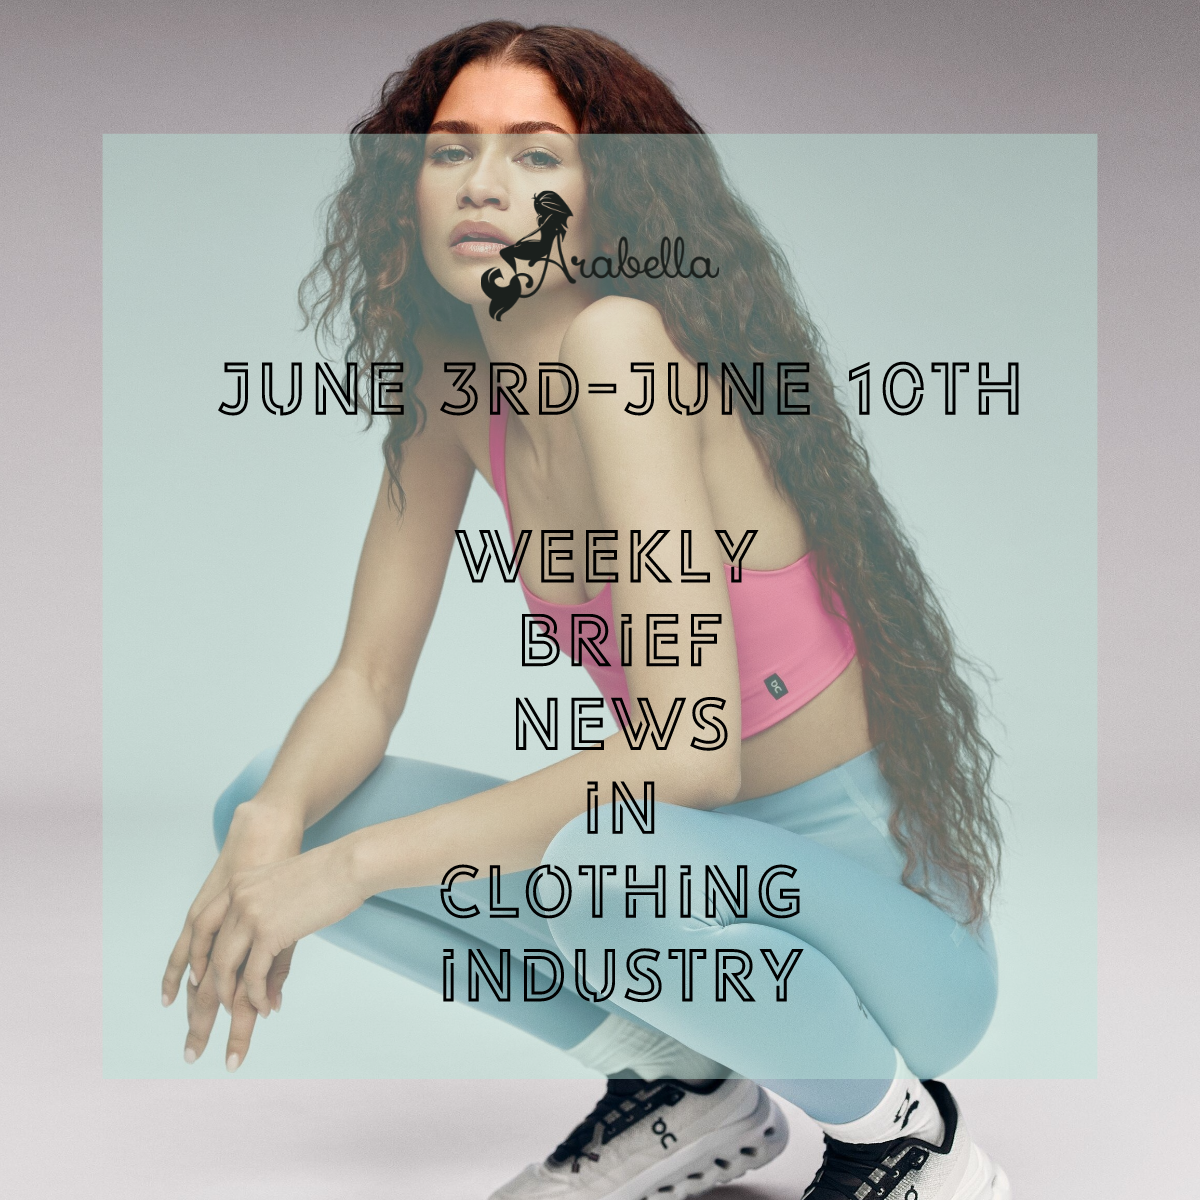 Arabella |Ďalšia kapitola zo dňa: Krátke týždenné správy z odevného priemyslu počas 3.-6. júna